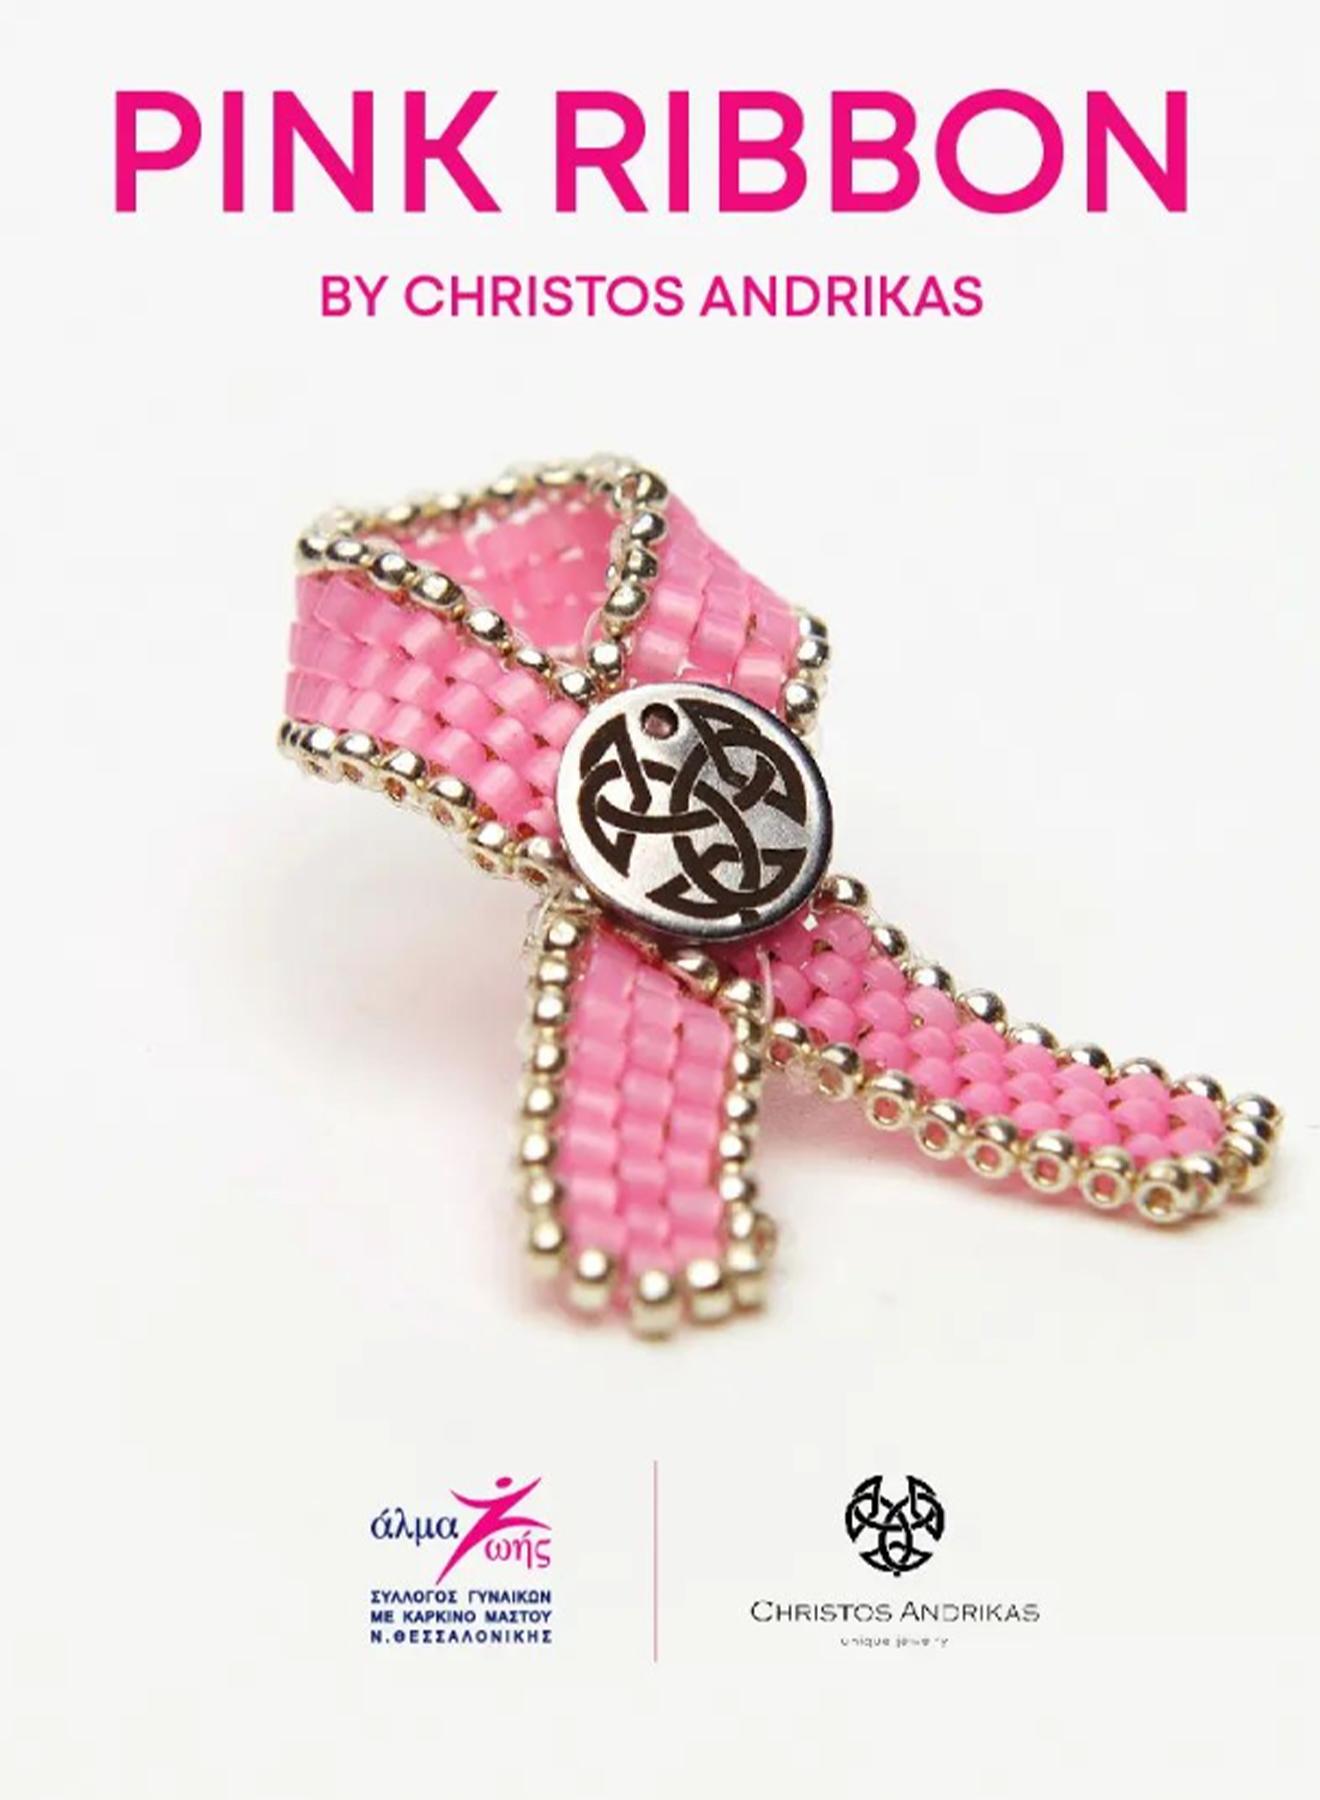 Pink ribbon "ALMA ZOIS" of Thessaloniki